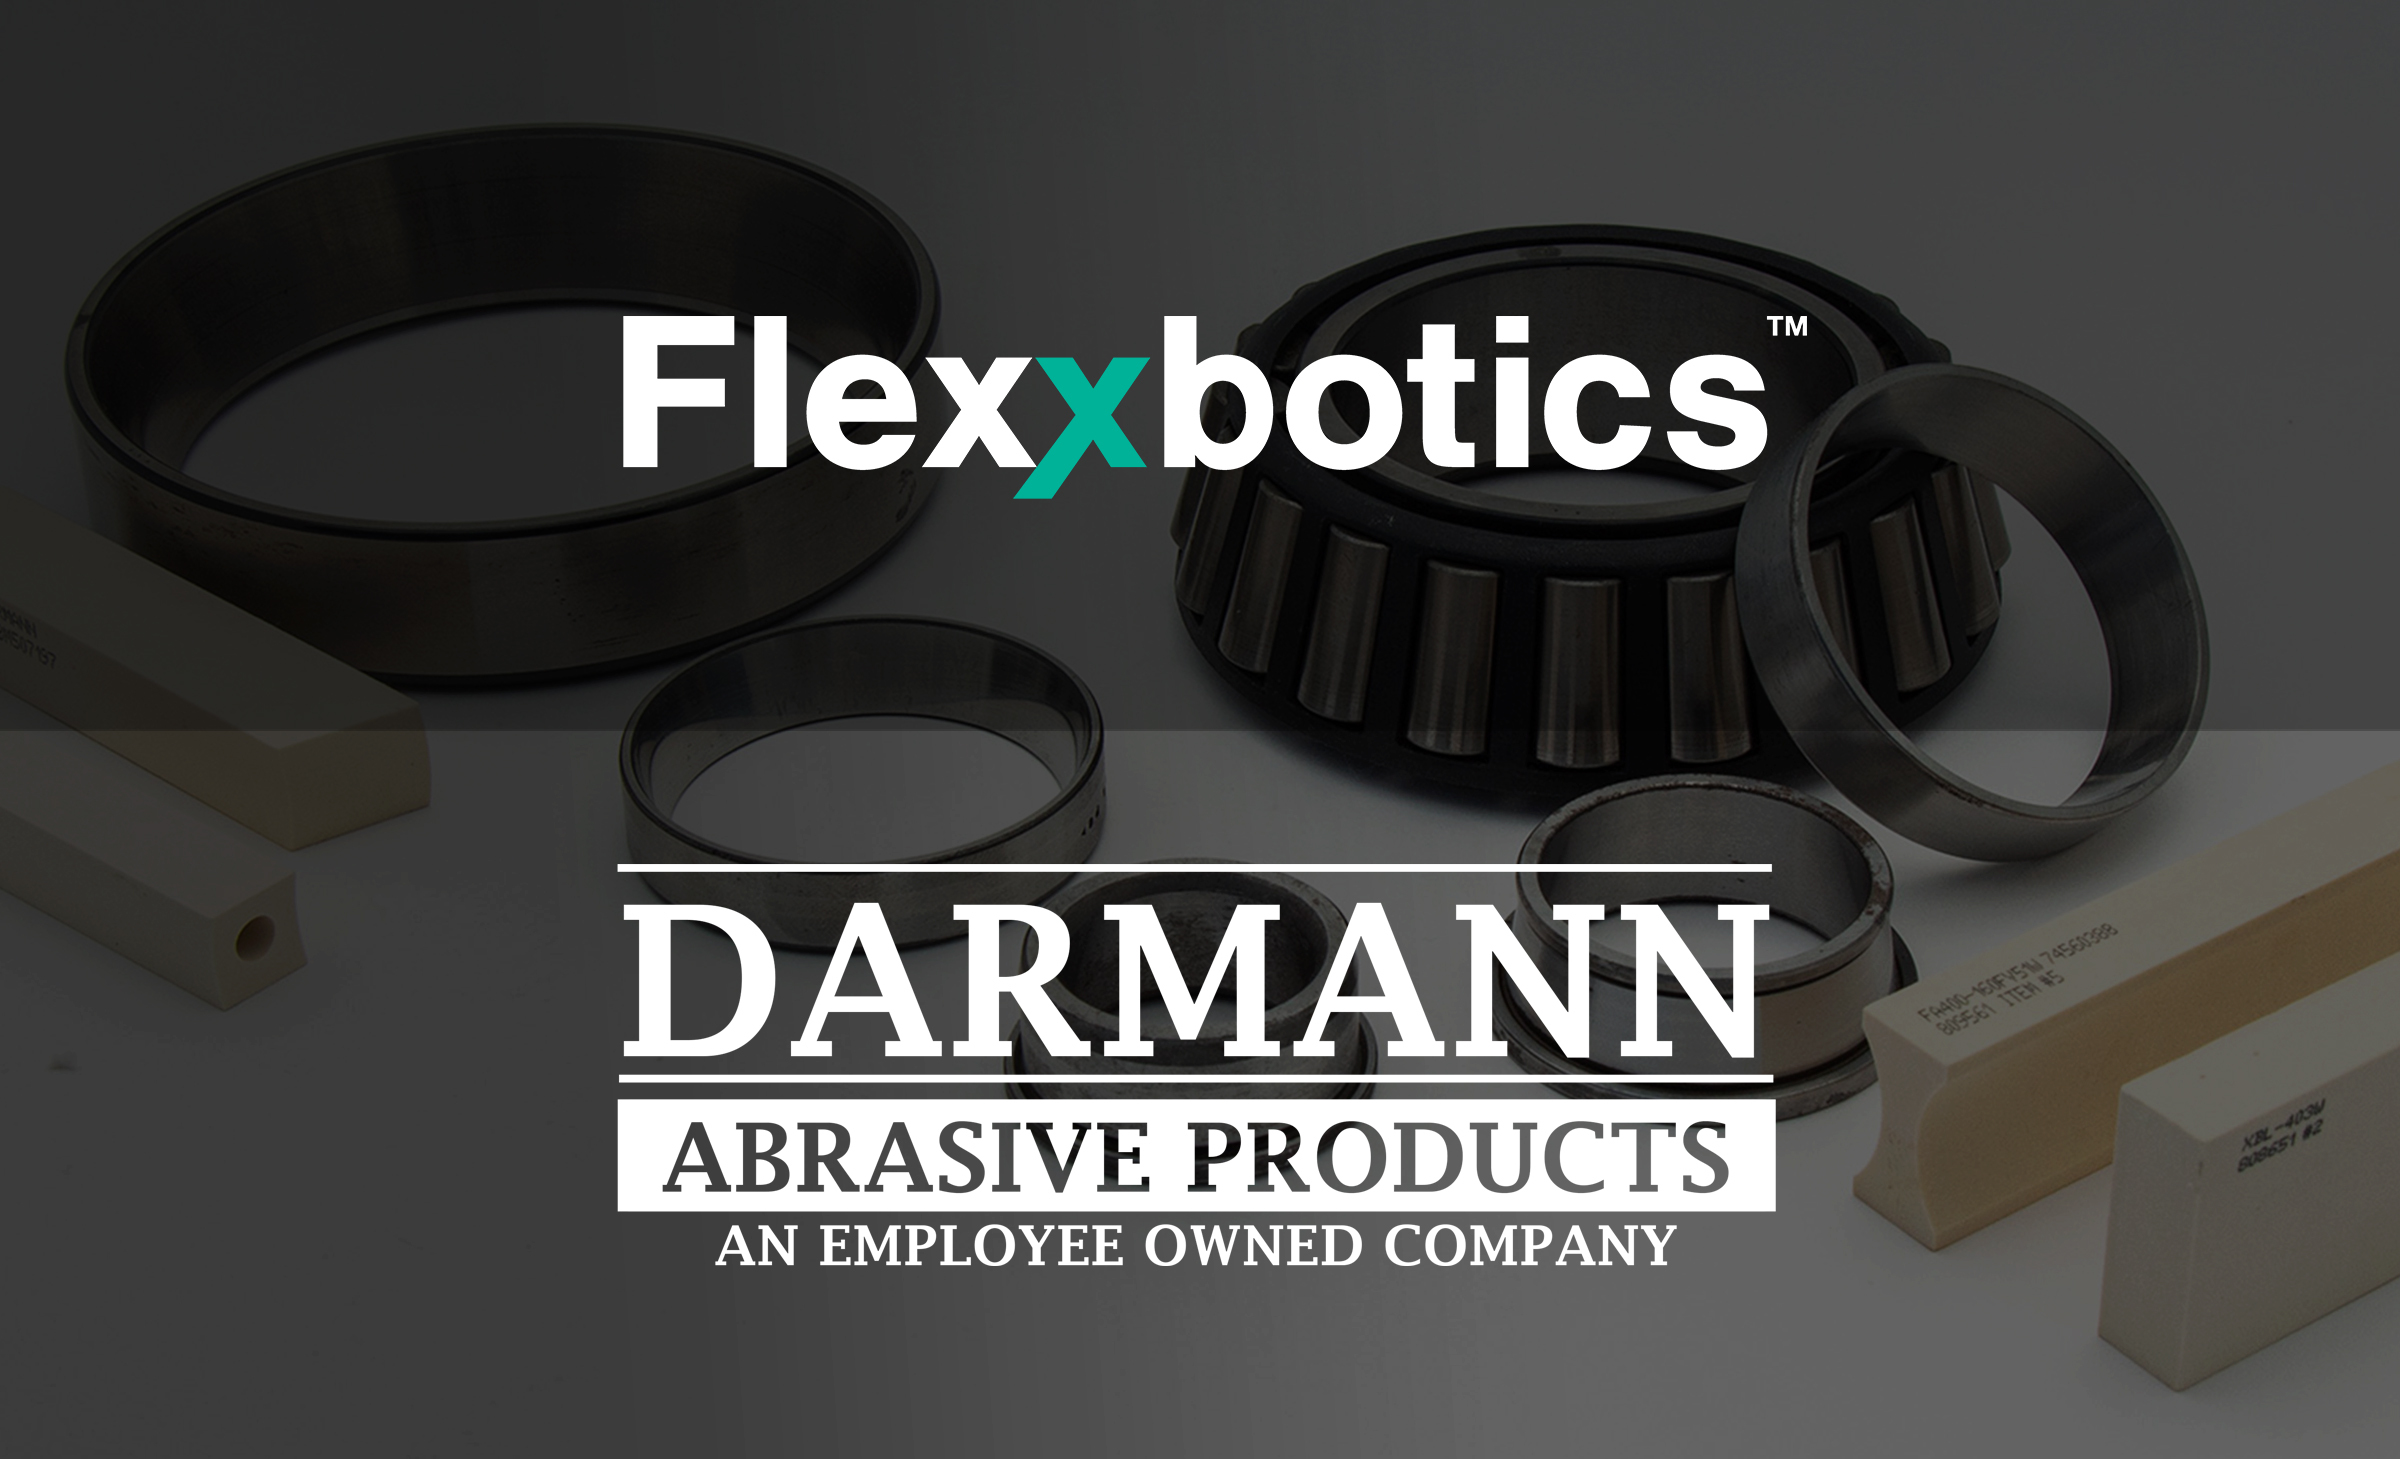 flexxbotics-darmann